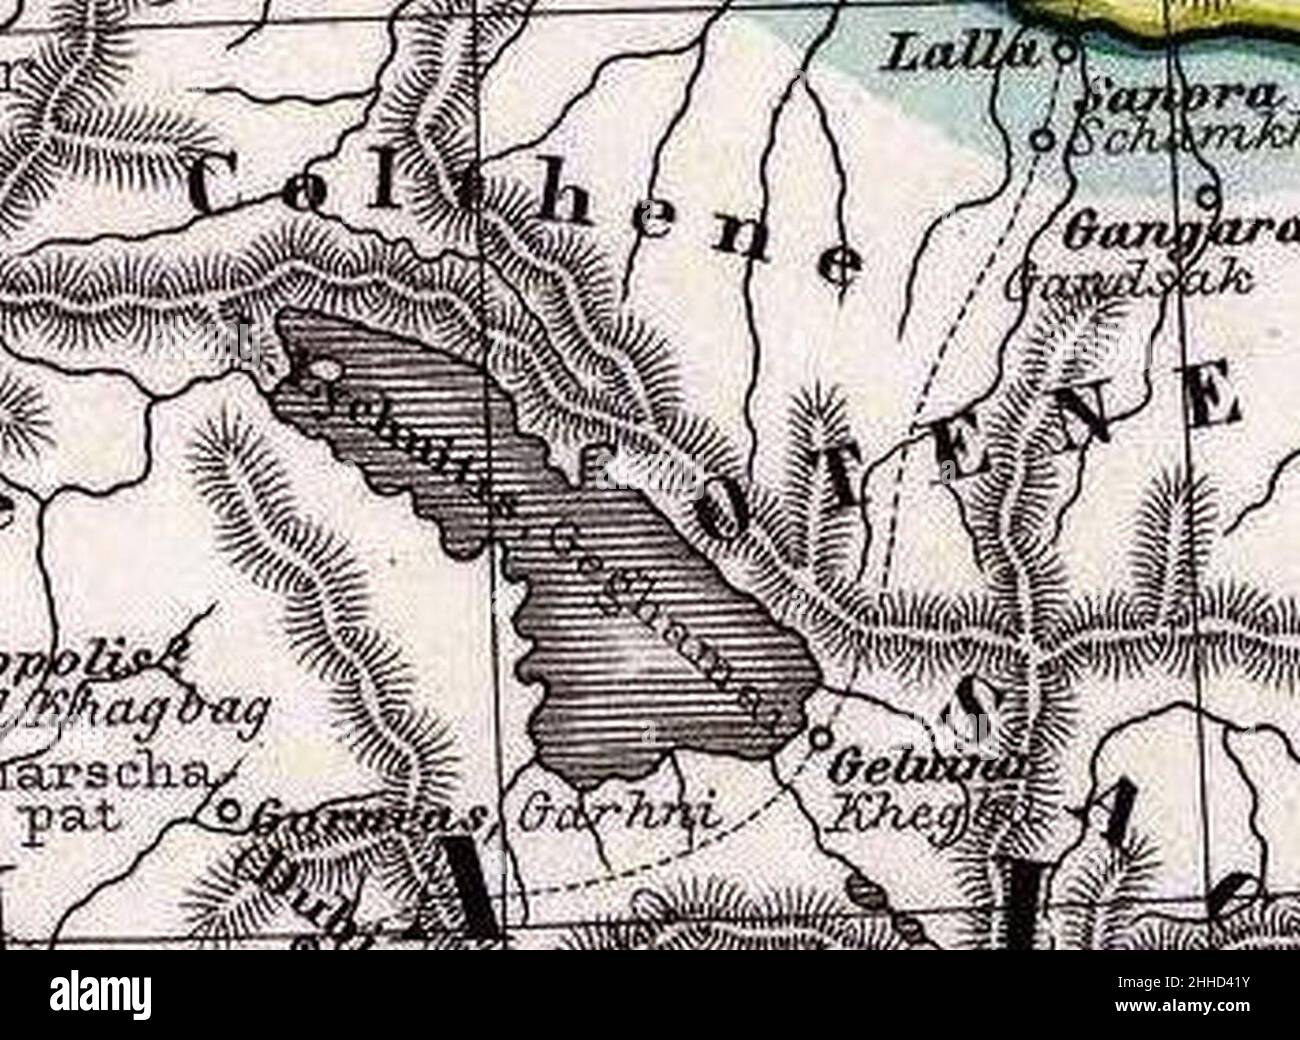 Spruner von Merz, Karl; Menke, TH 1865 Albanie, Iberia,Colchis, Arménie, Mésopotamie, Babylonia, Assyrie (G). Banque D'Images